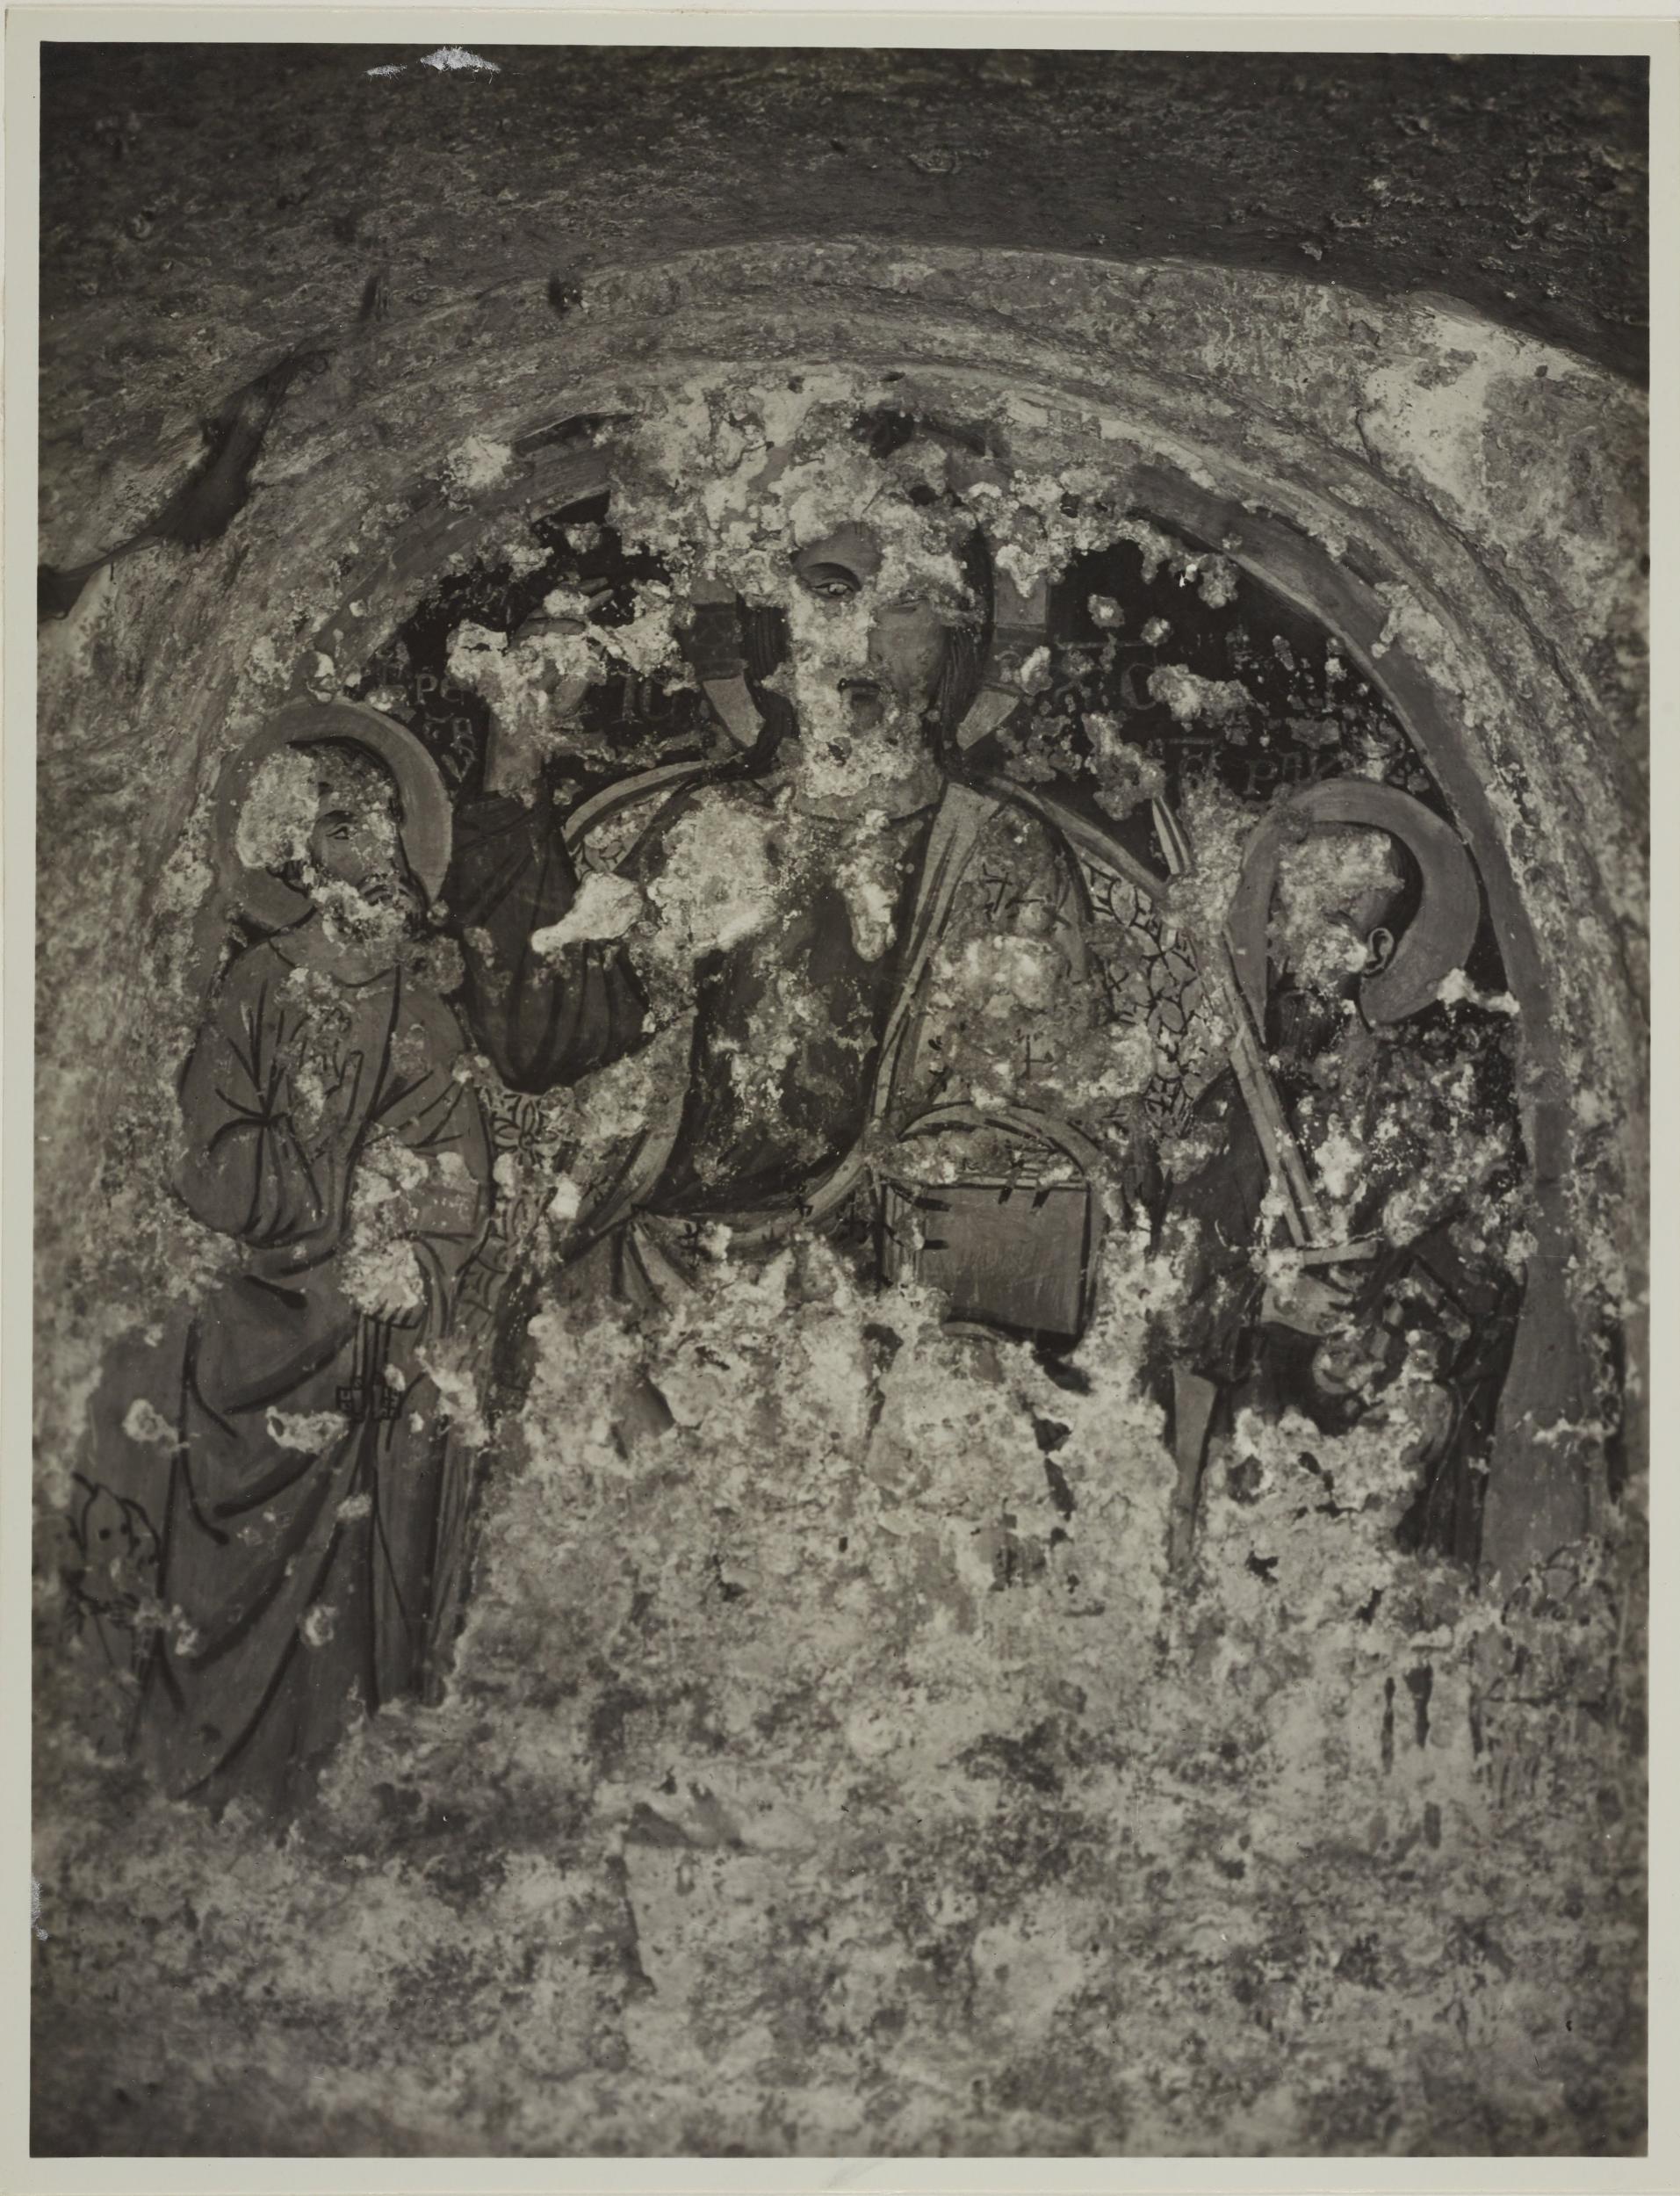 Fotografo non identificato, Andria - Chiesa di S. Croce, il redentore e i Ss. Pietro e Paolo, 1926-1950, gelatina ai sali d'argento/carta, MPI131857